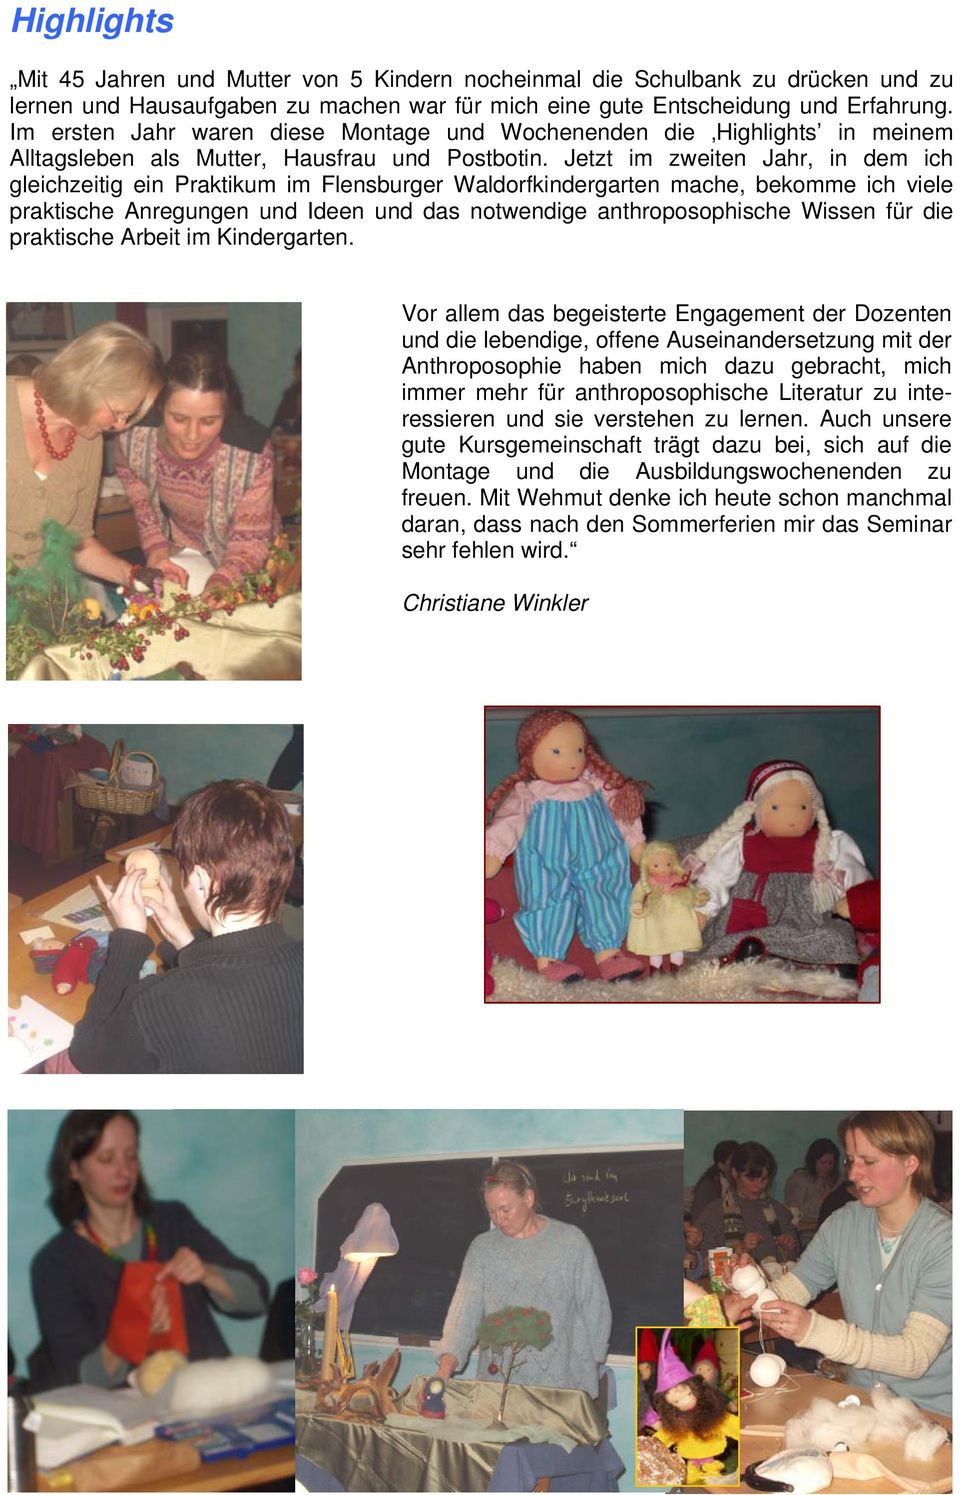 Jetzt im zweiten Jahr, in dem ich gleichzeitig ein Praktikum im Flensburger Waldorfkindergarten mache, bekomme ich viele praktische Anregungen und Ideen und das notwendige anthroposophische Wissen